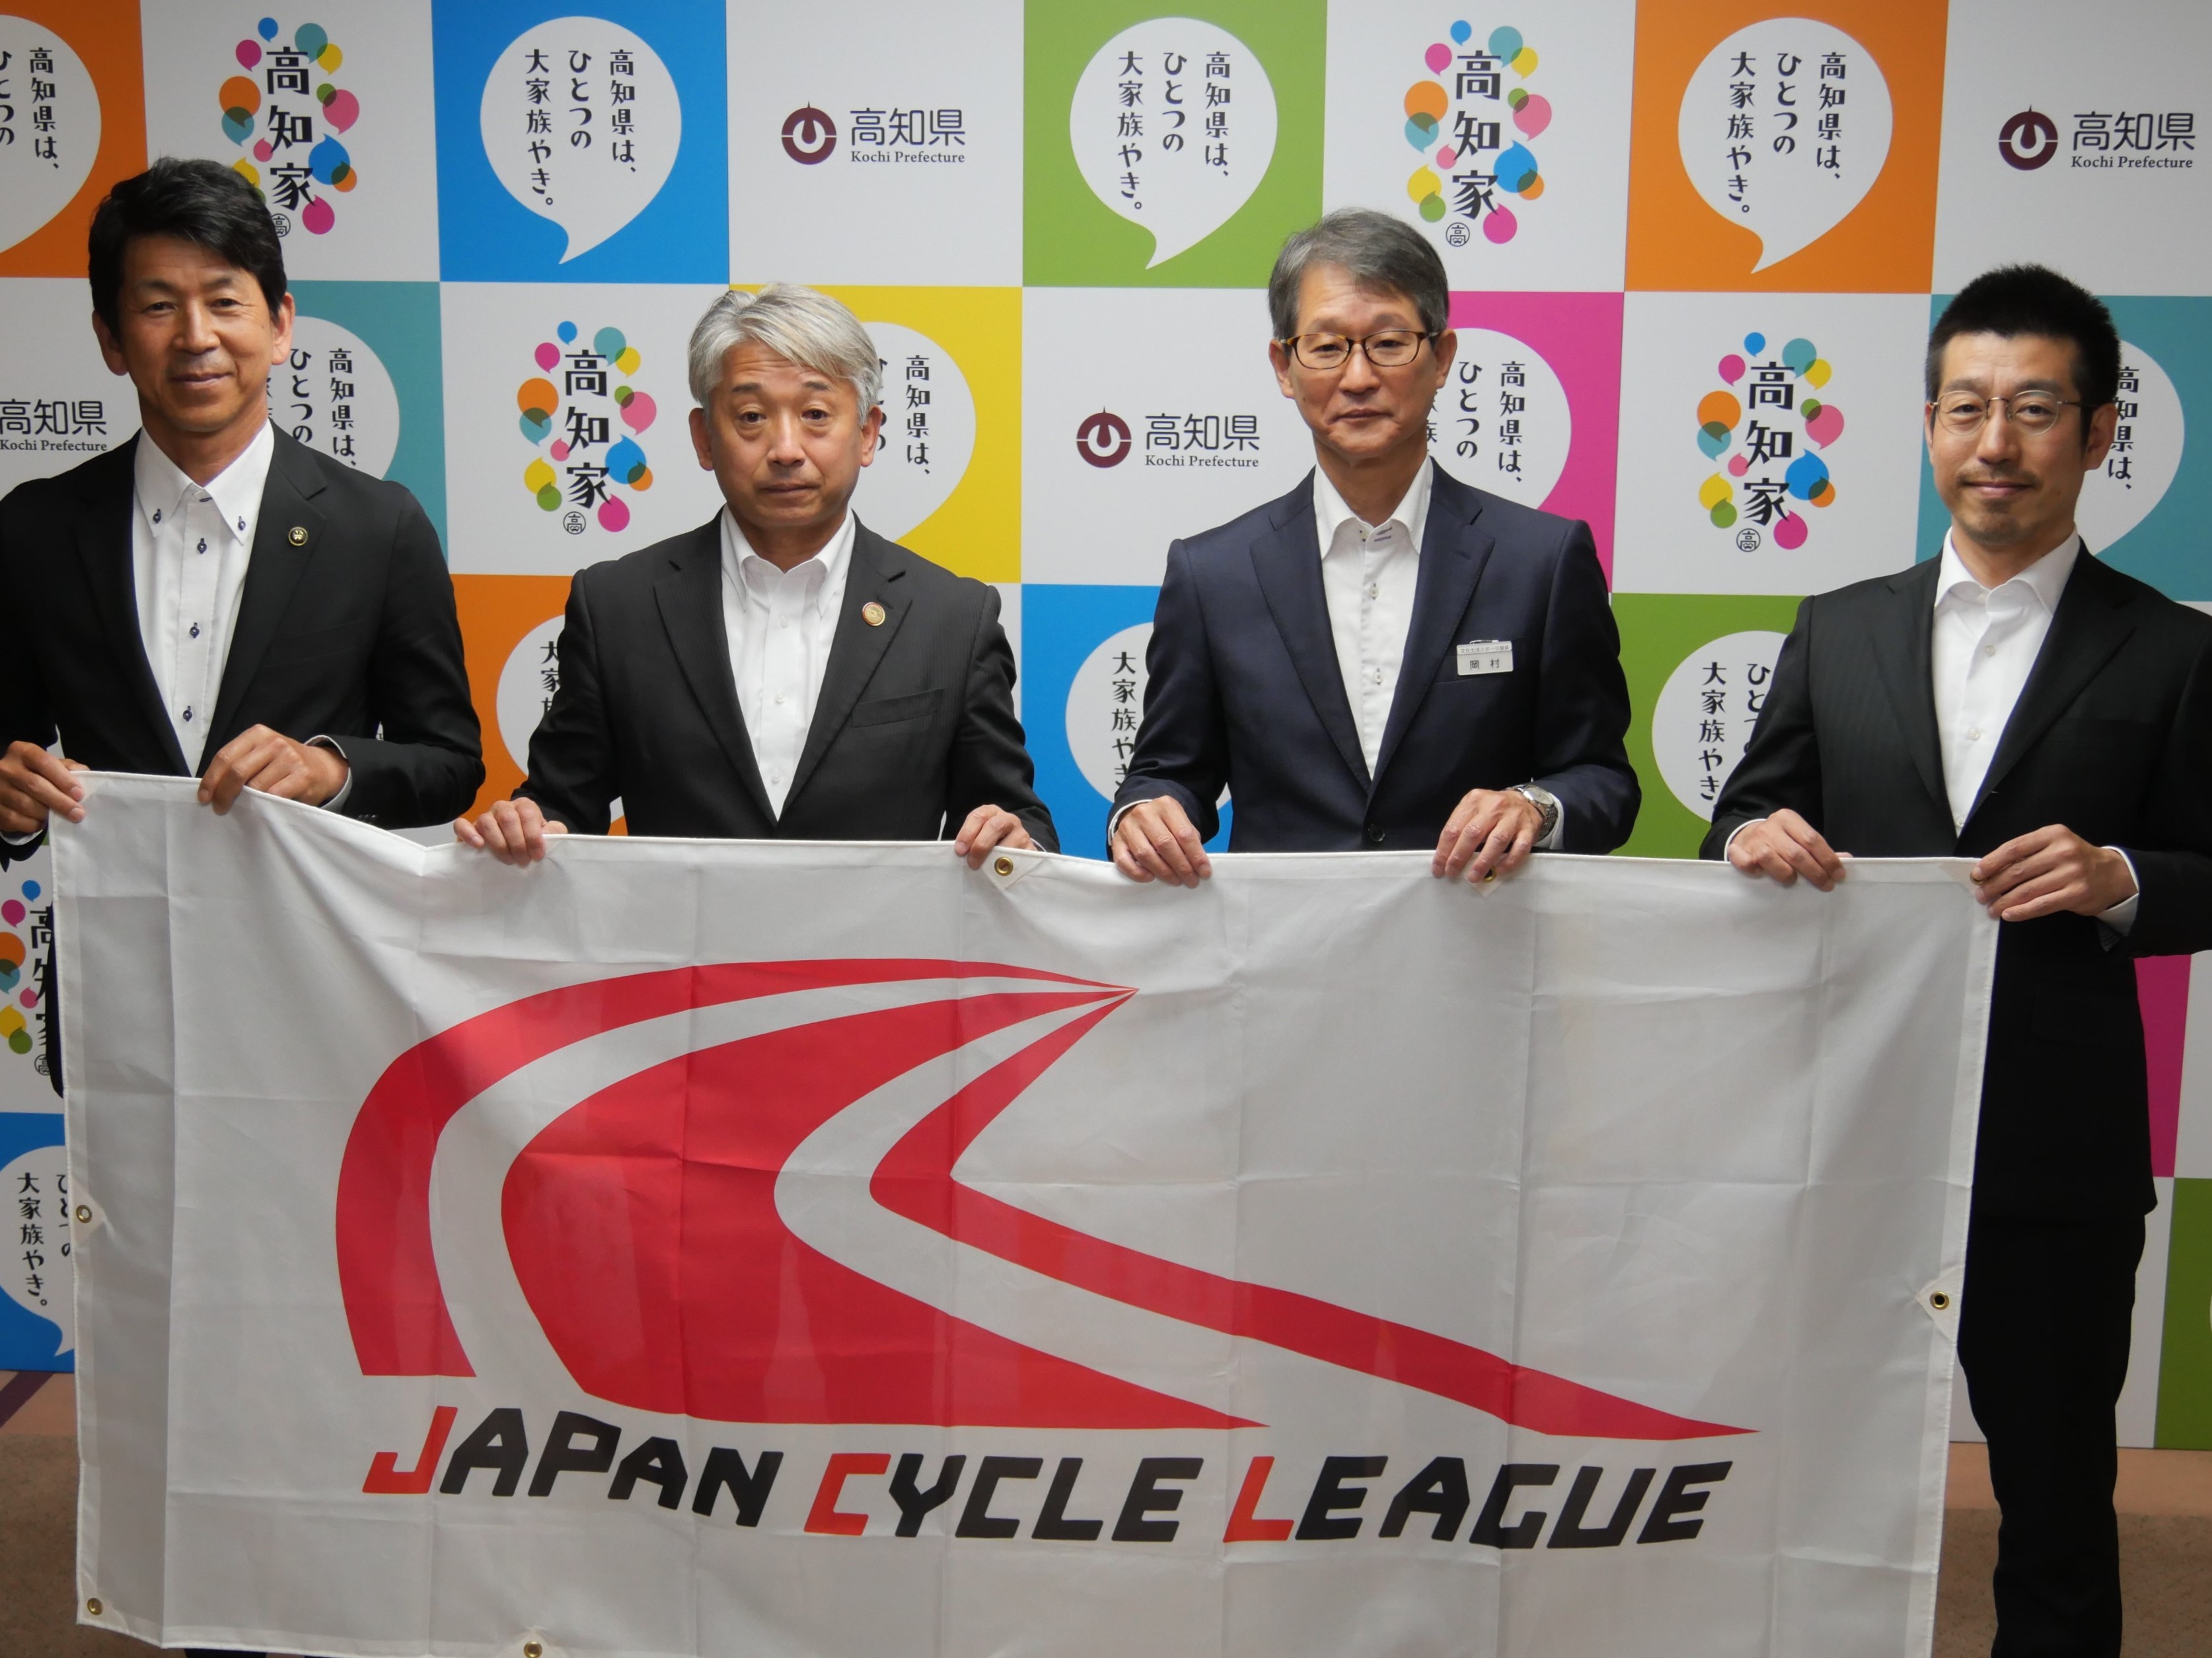 ジャパンサイクルリーグ高知大会実行委員会が設立